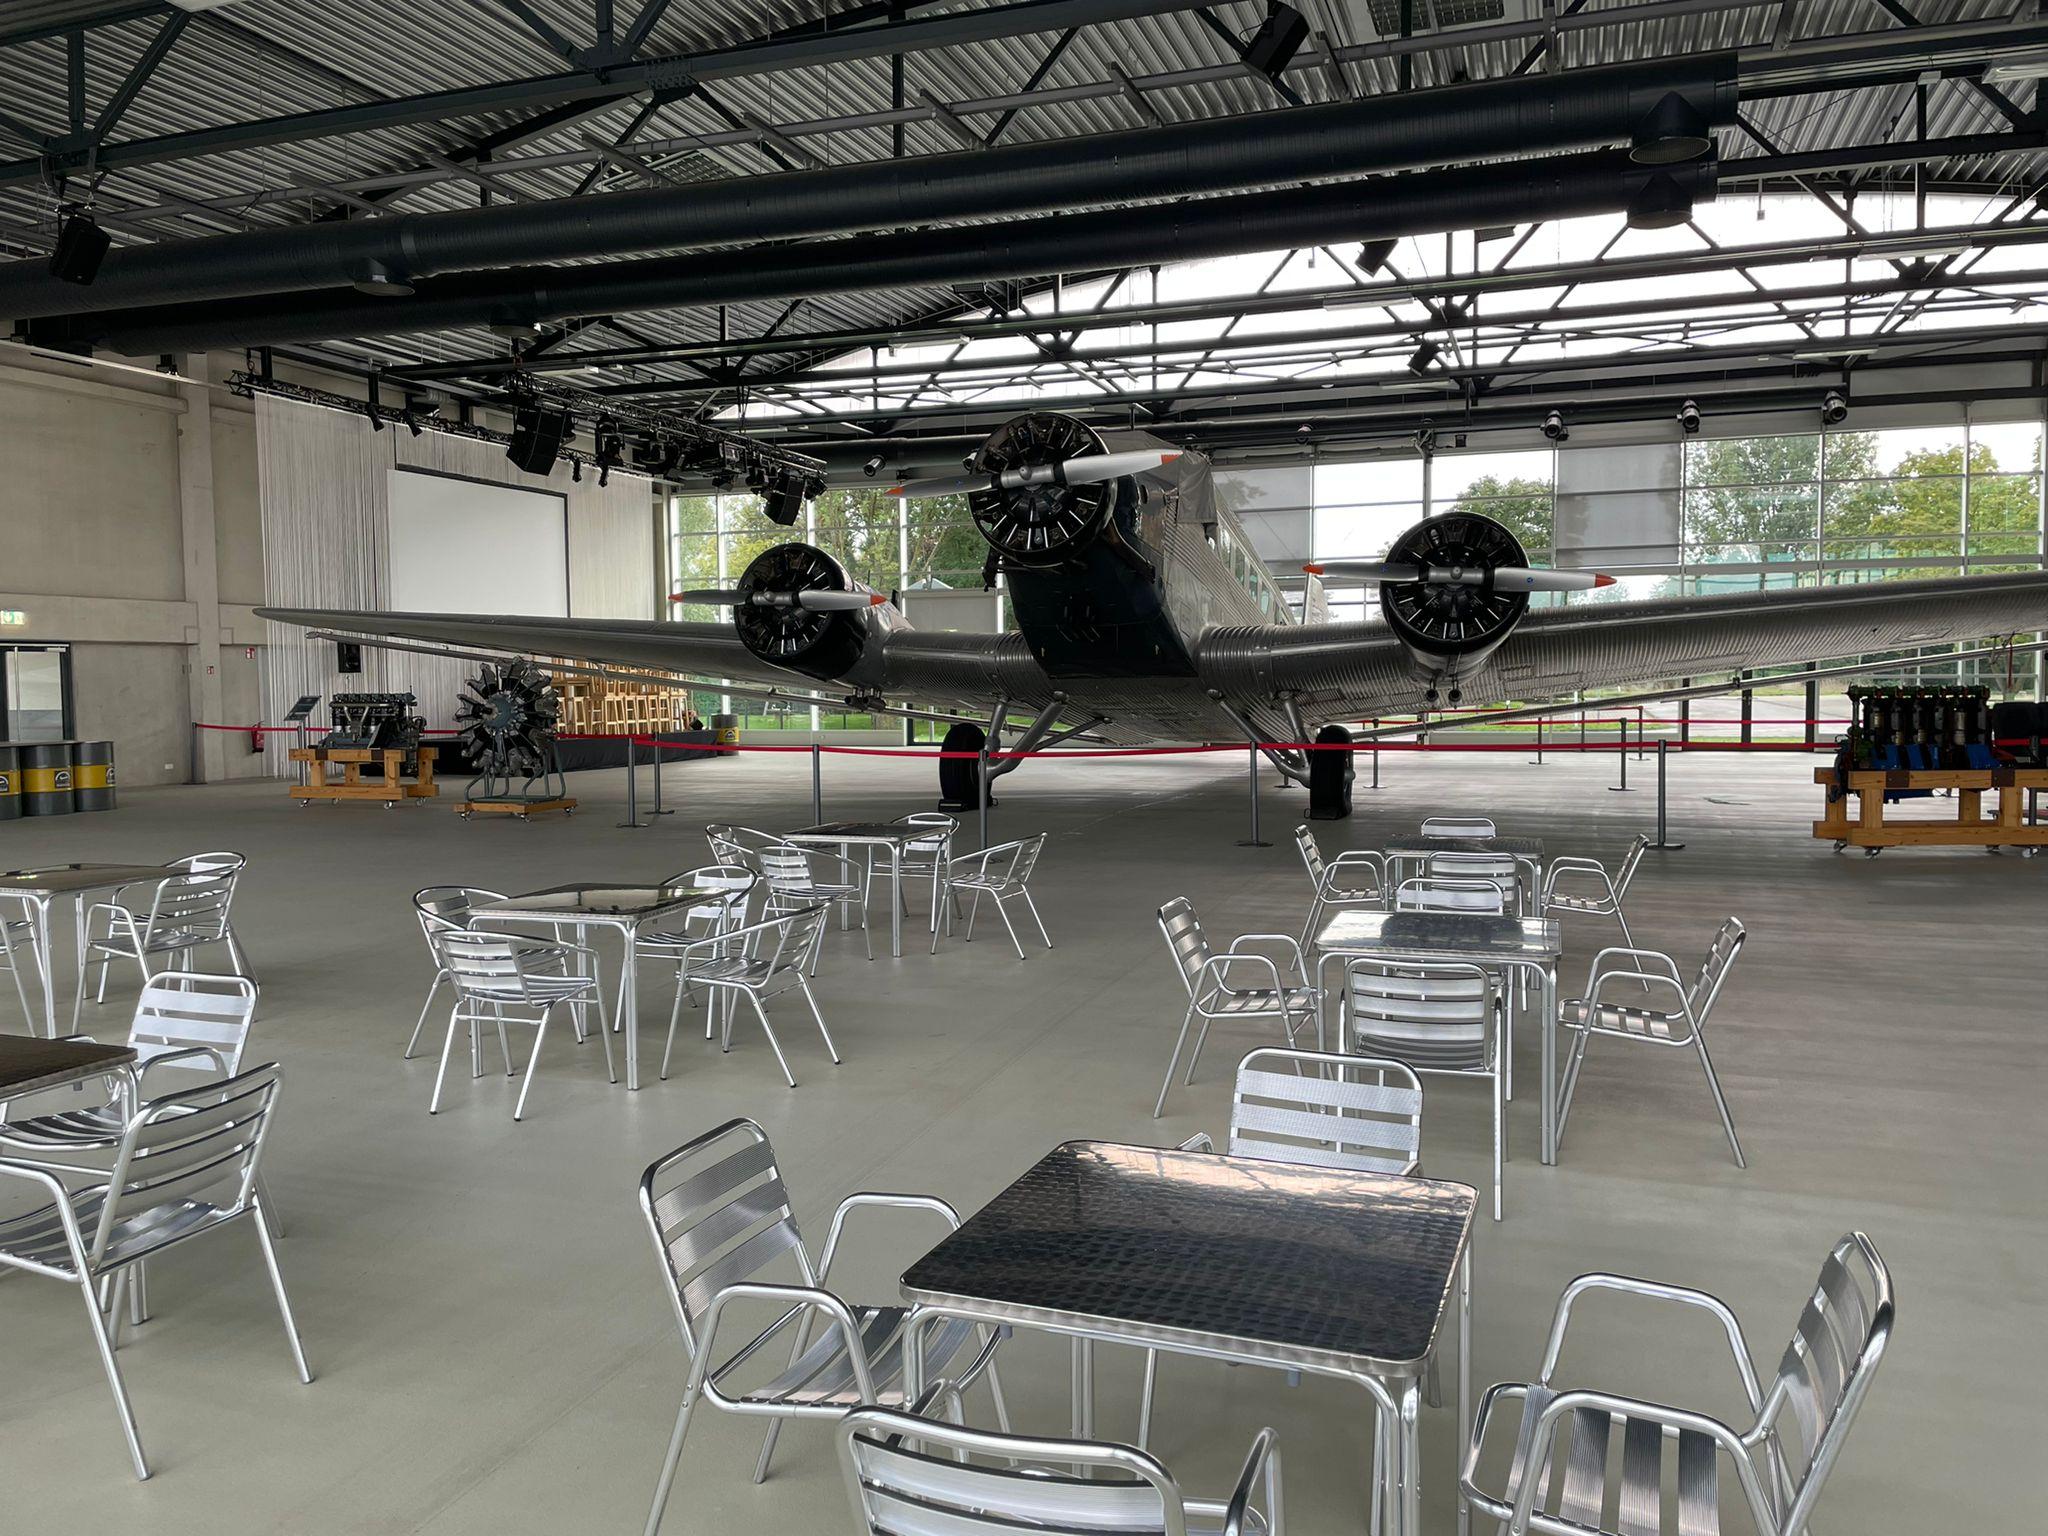 132. Unsere Ju52 (Kennzeichen HB-HOY) und der Hangar warten auf Euch